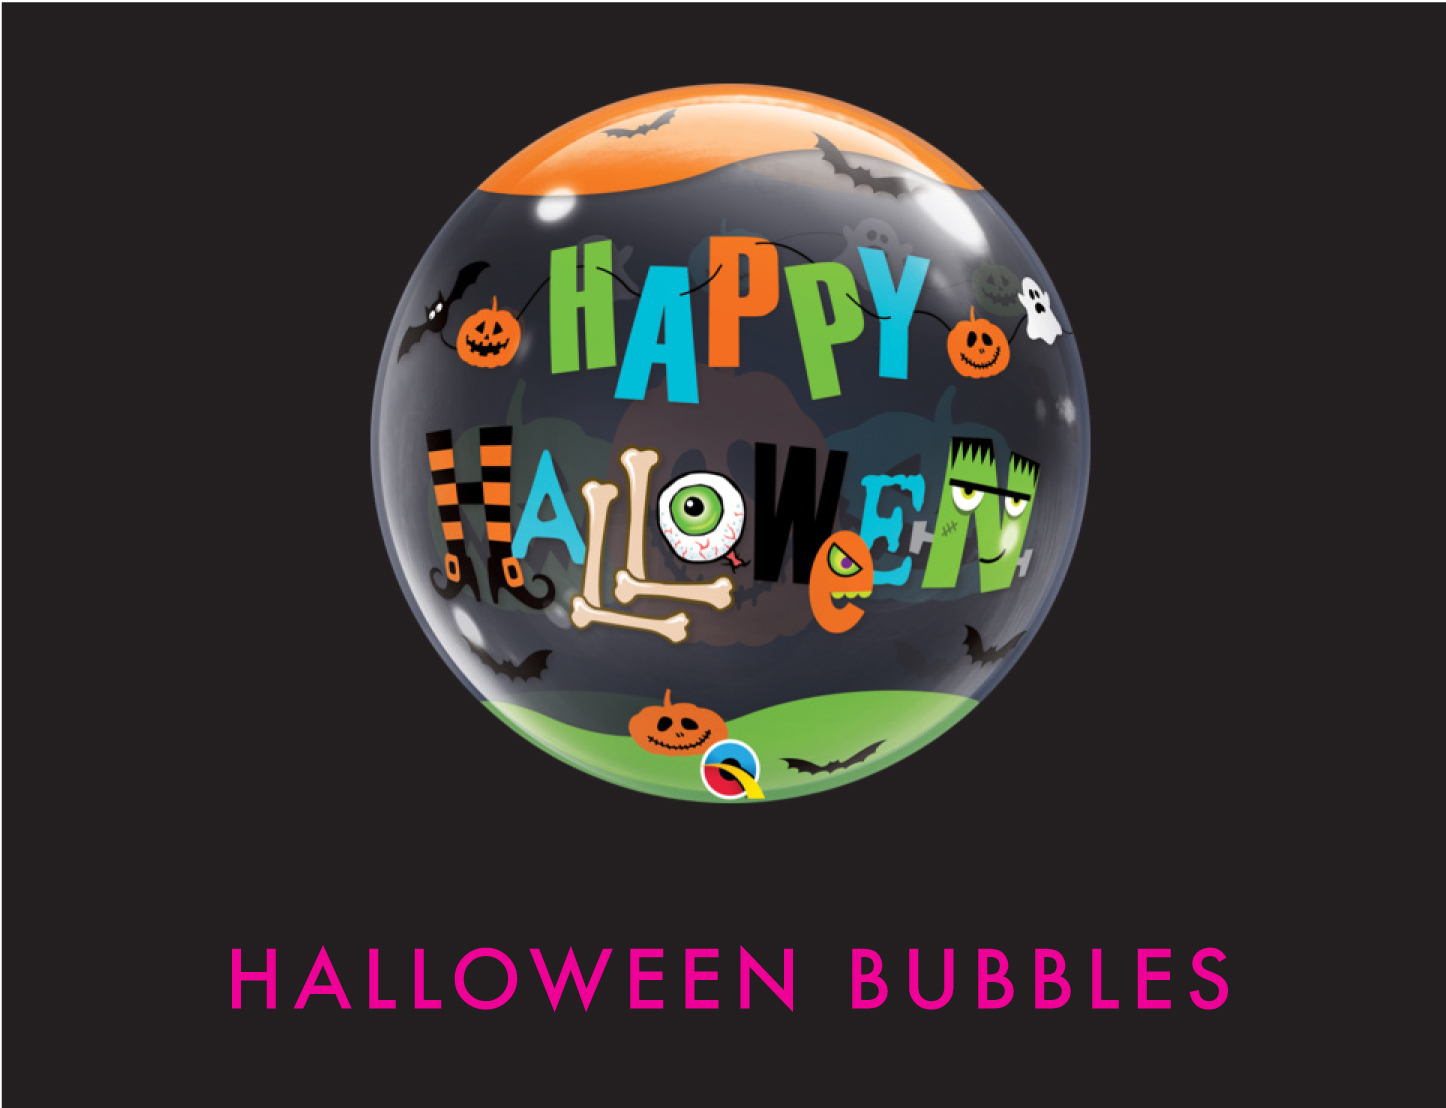 Halloween Bubble Balloons